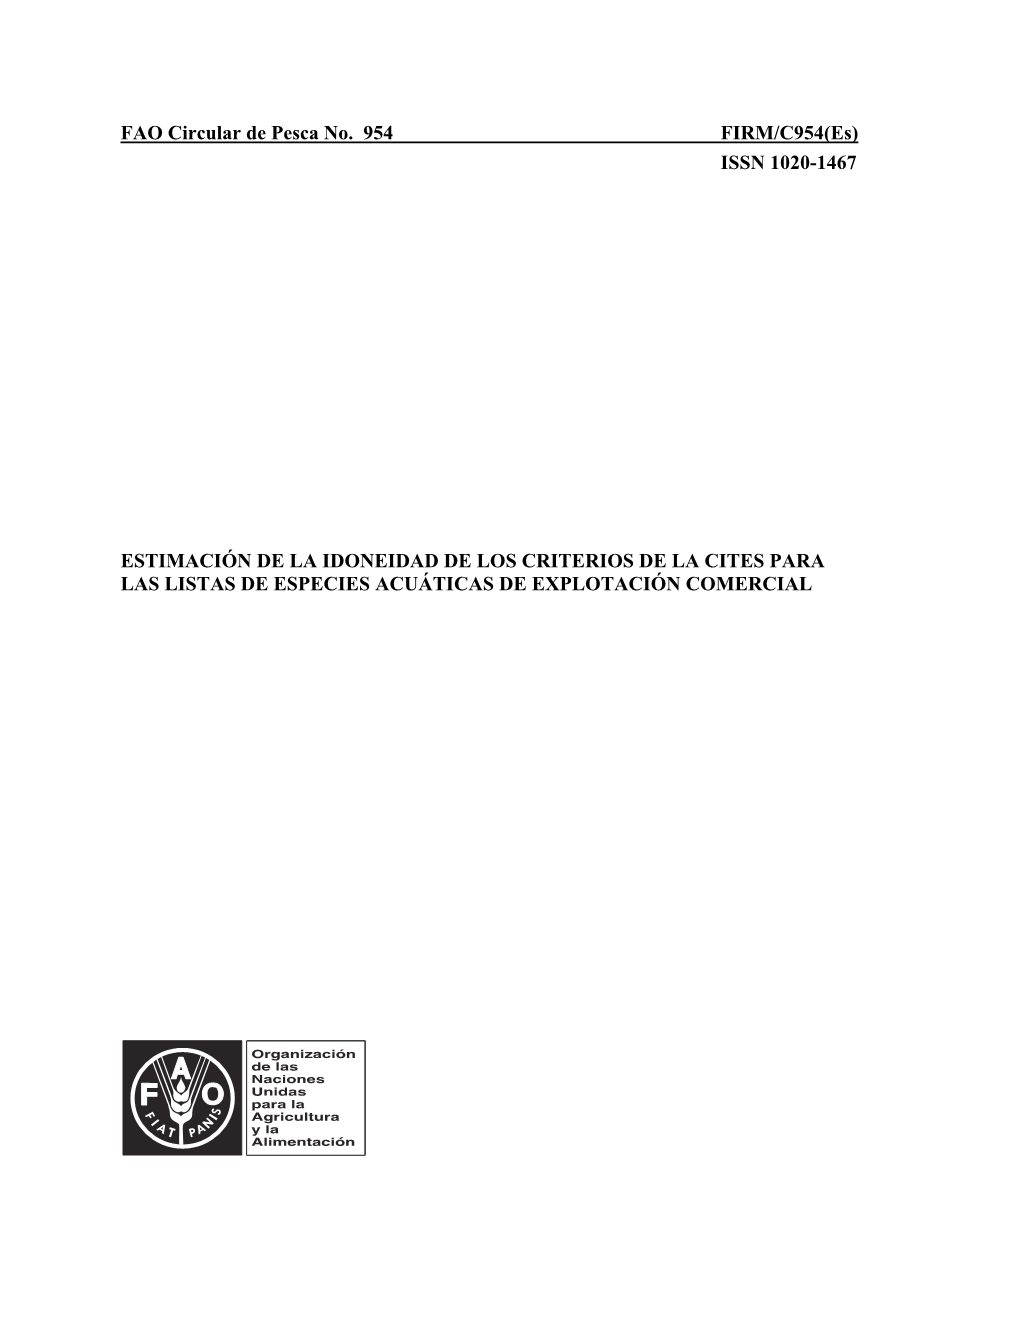 FAO Circular De Pesca No. 954 FIRM/C954(Es) ISSN 1020-1467